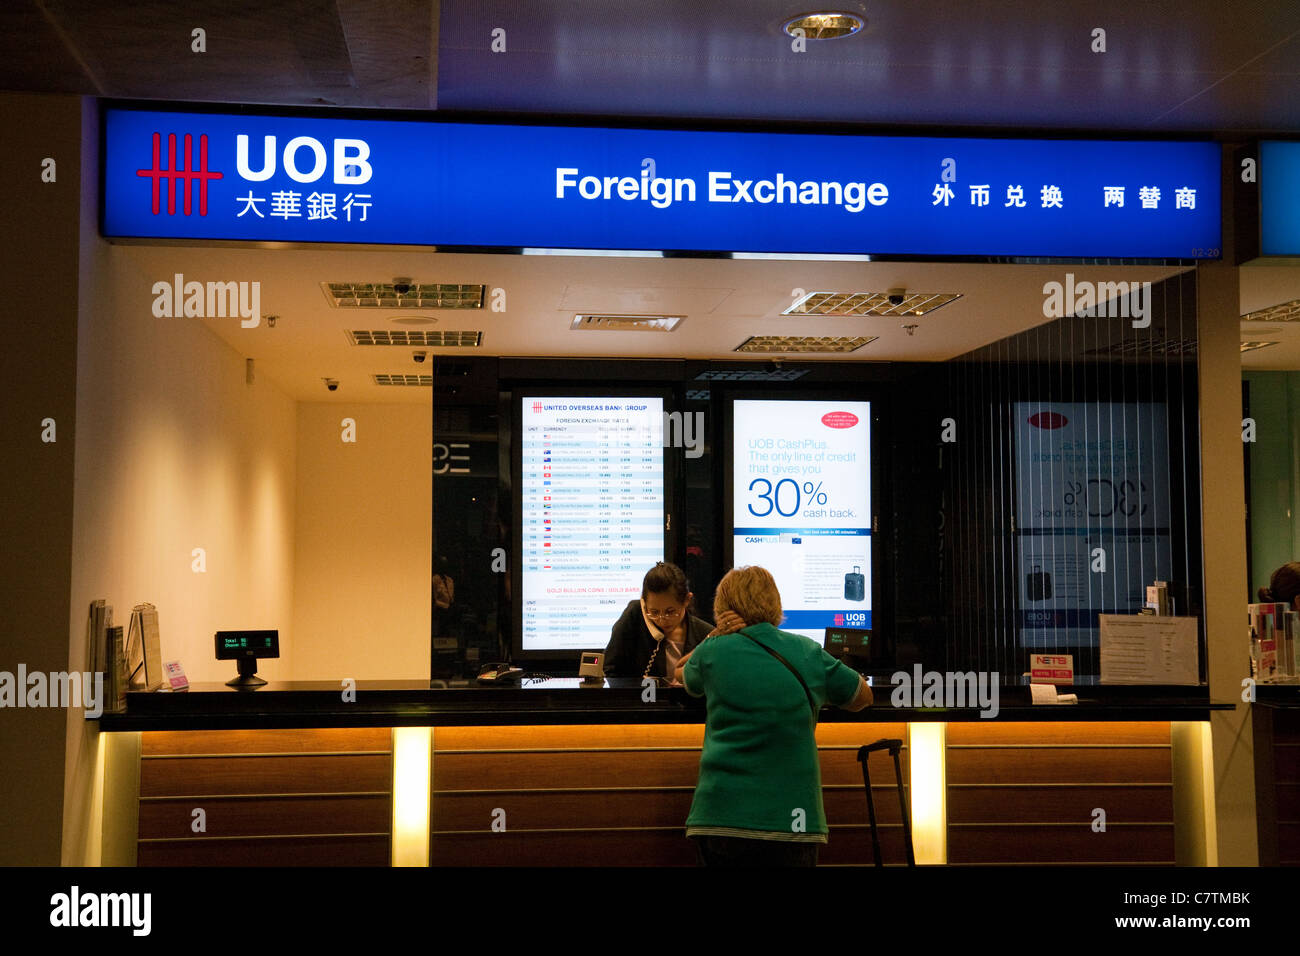 United Overseas Bank (UOB) opérations de change à l'aéroport de Changi à Singapour Banque D'Images